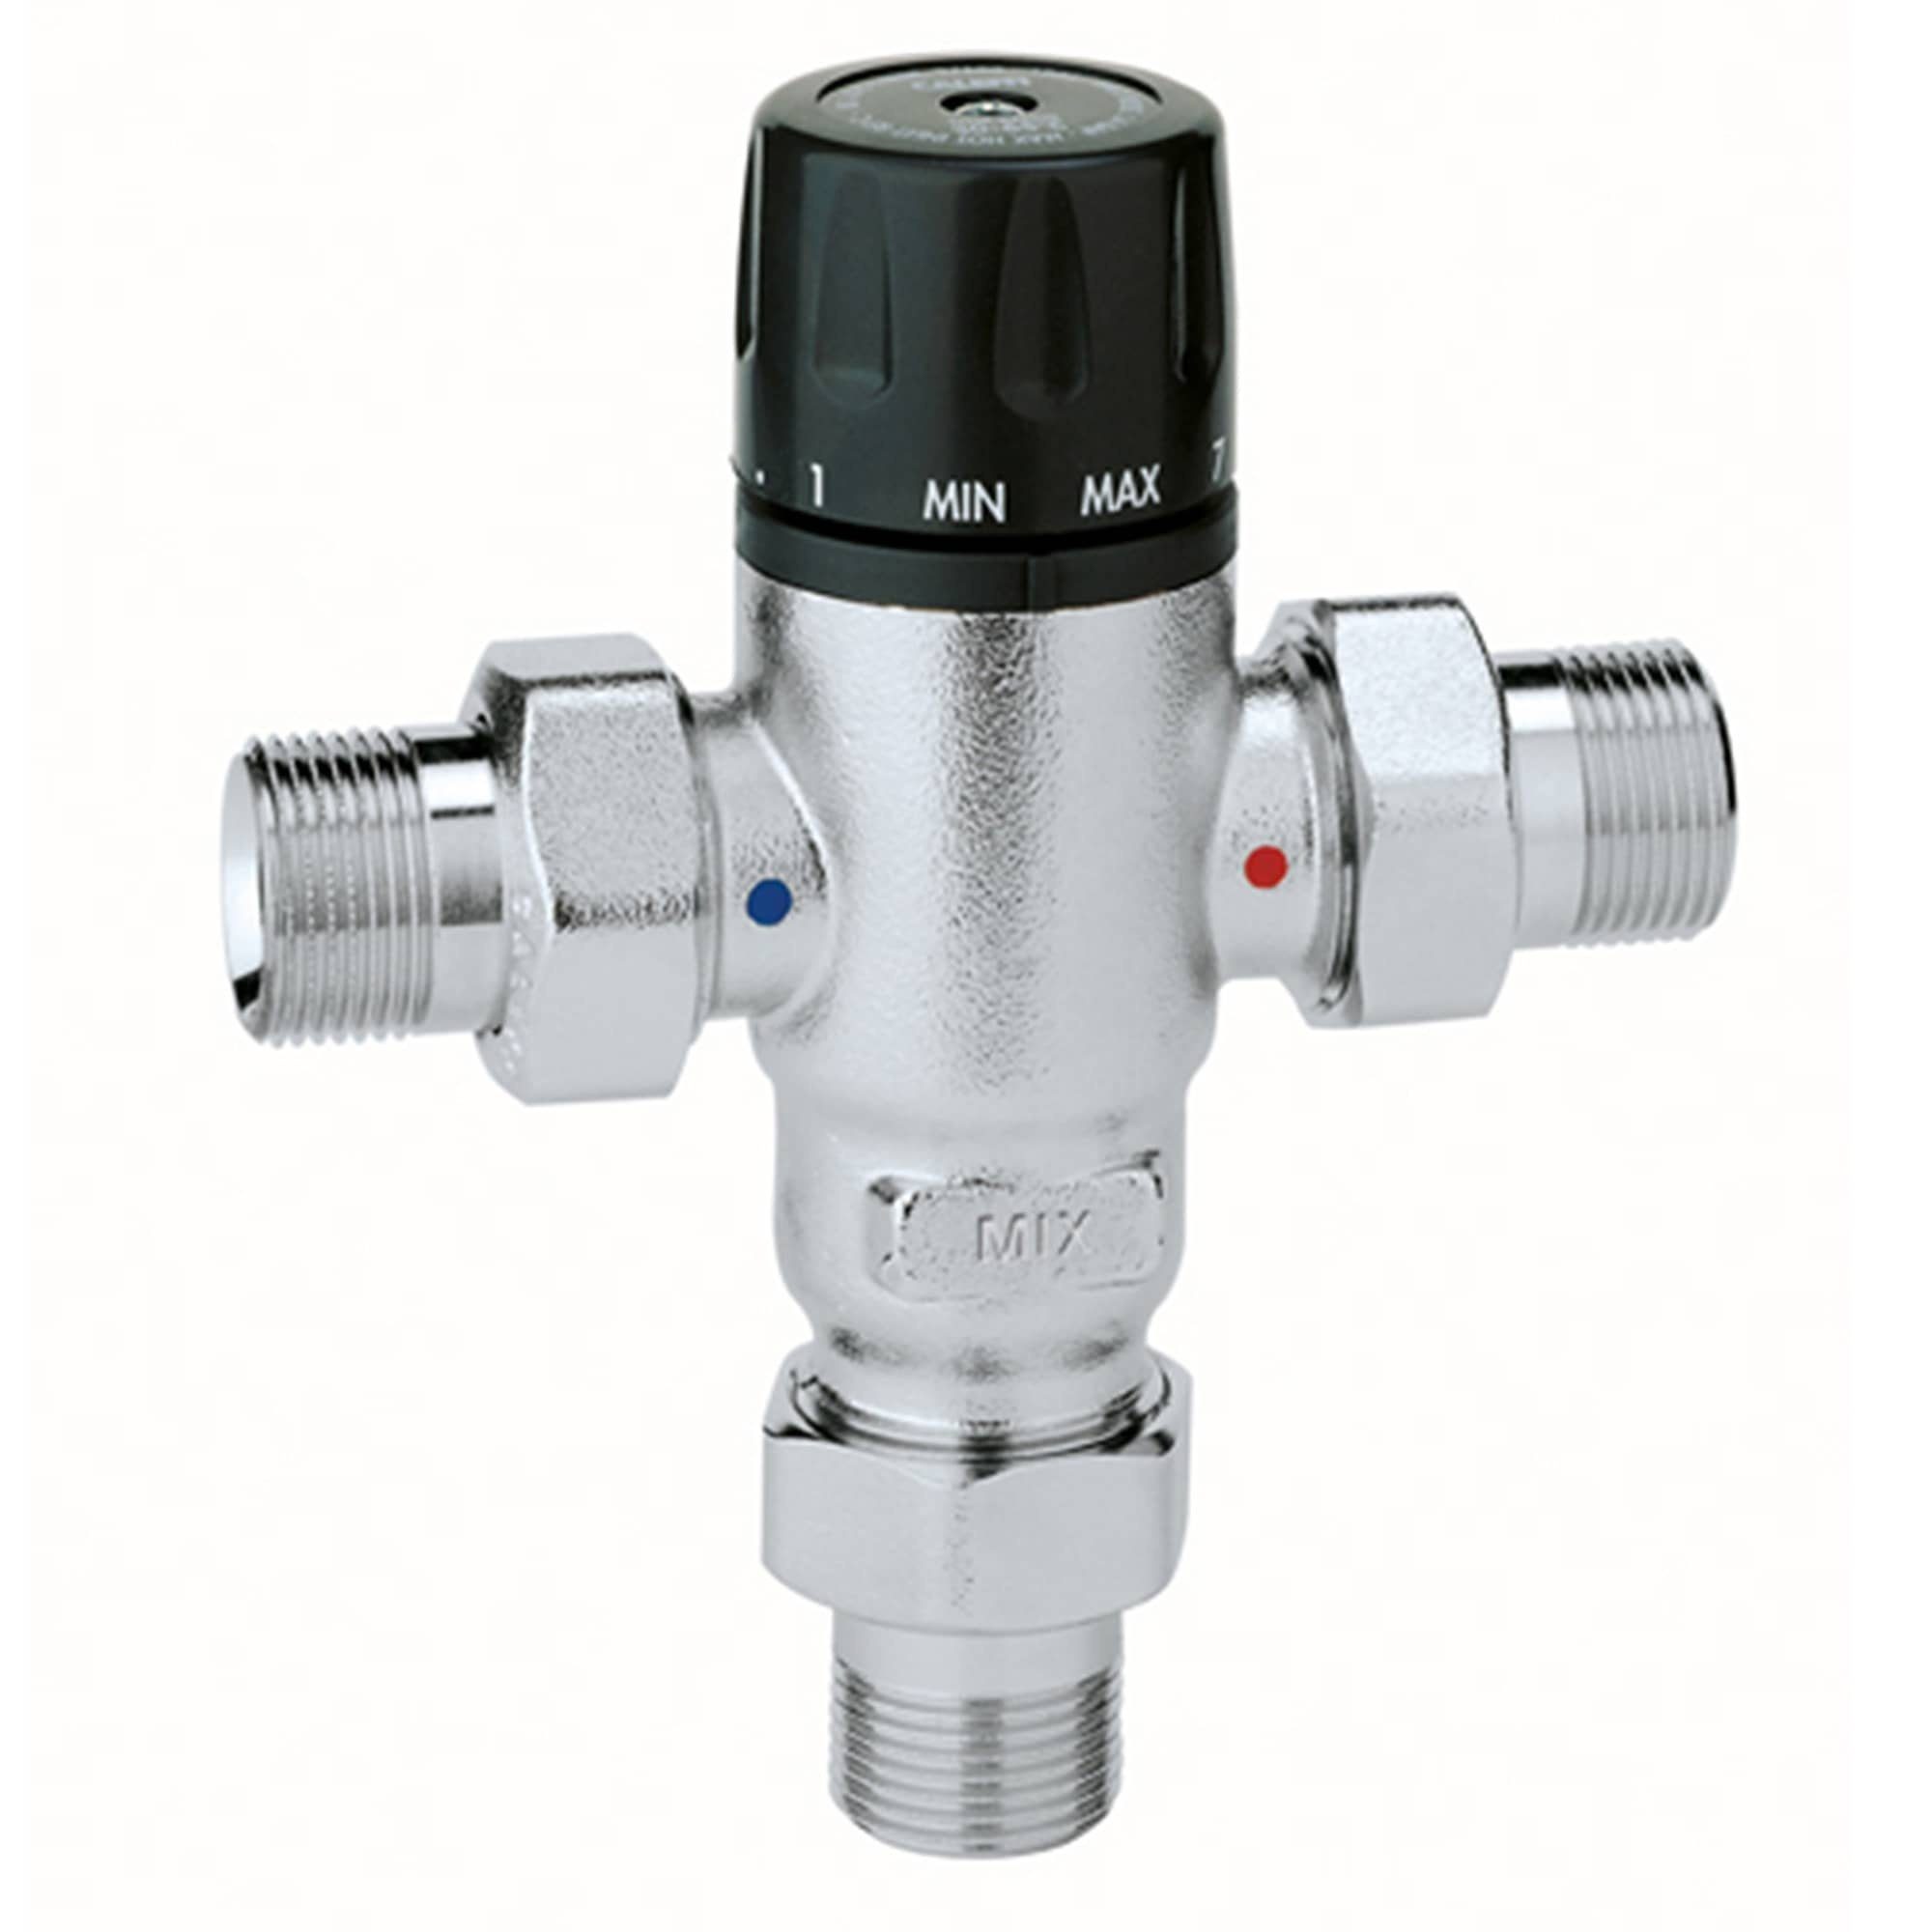 qpool24 Geräteventil Caleffi Thermomischer 3/4" Brauchwassermischer inkl., Verschraubungen mit oder ohne Rückflussverhinderer